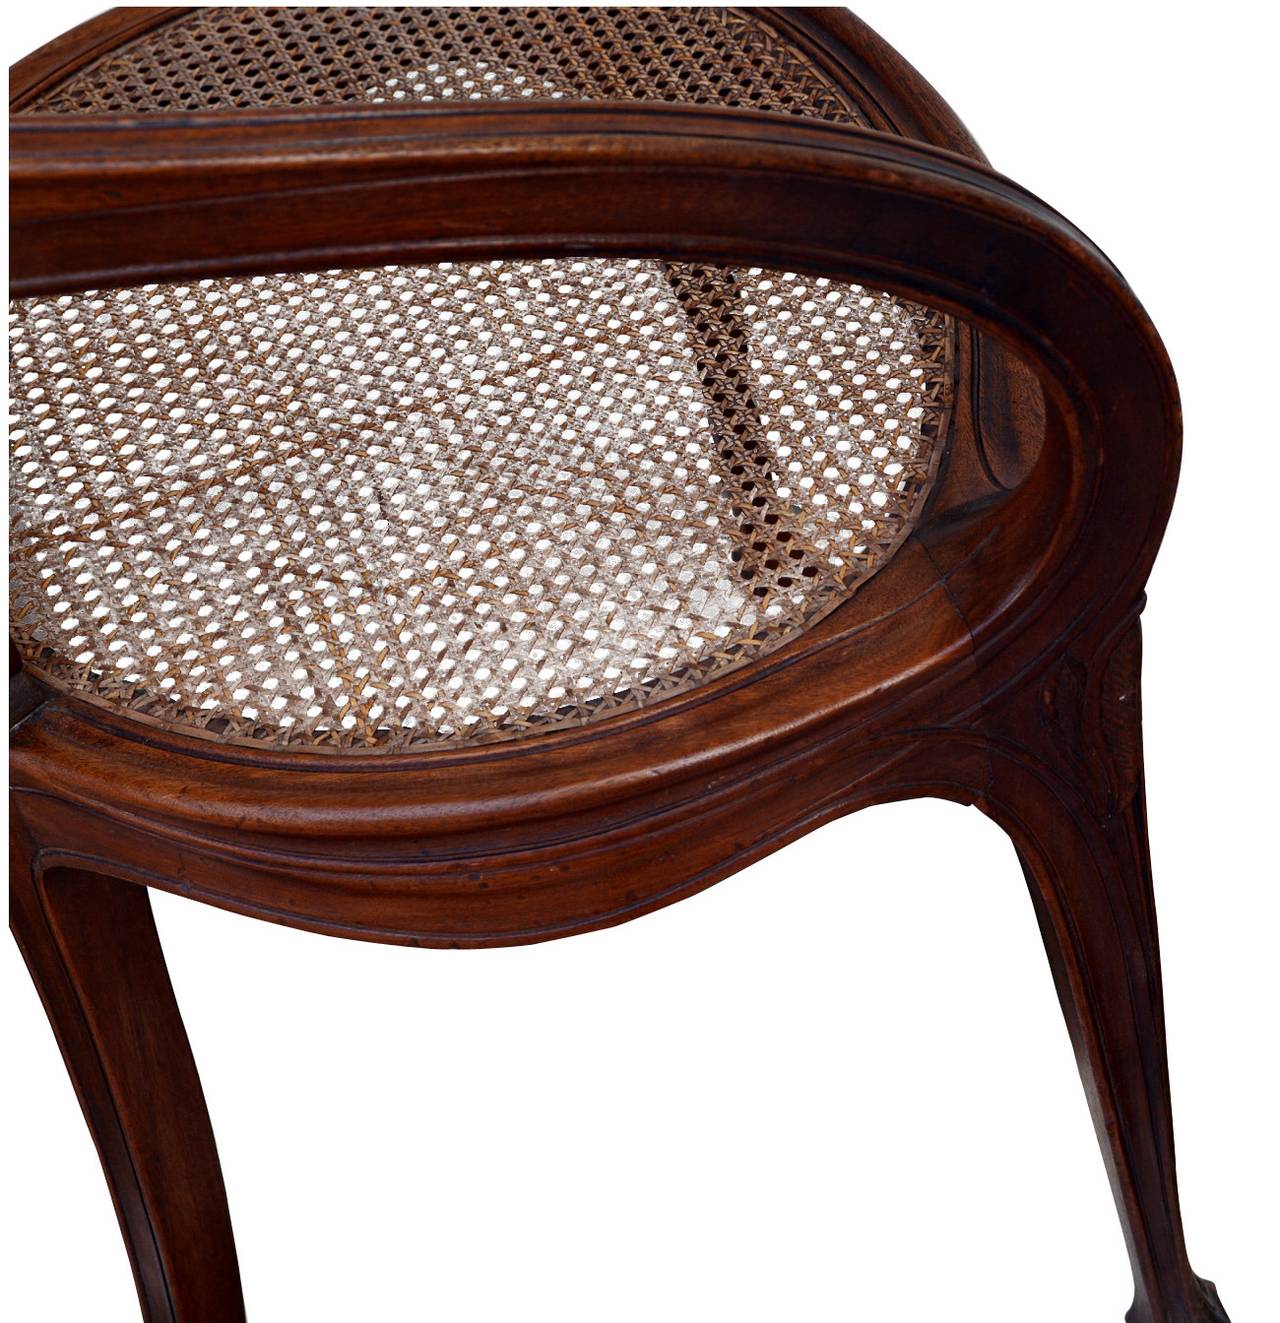 Art Nouveau Period Desk Chair, École de Nancy, Circle of Louis Majorelle, 1910s For Sale 1